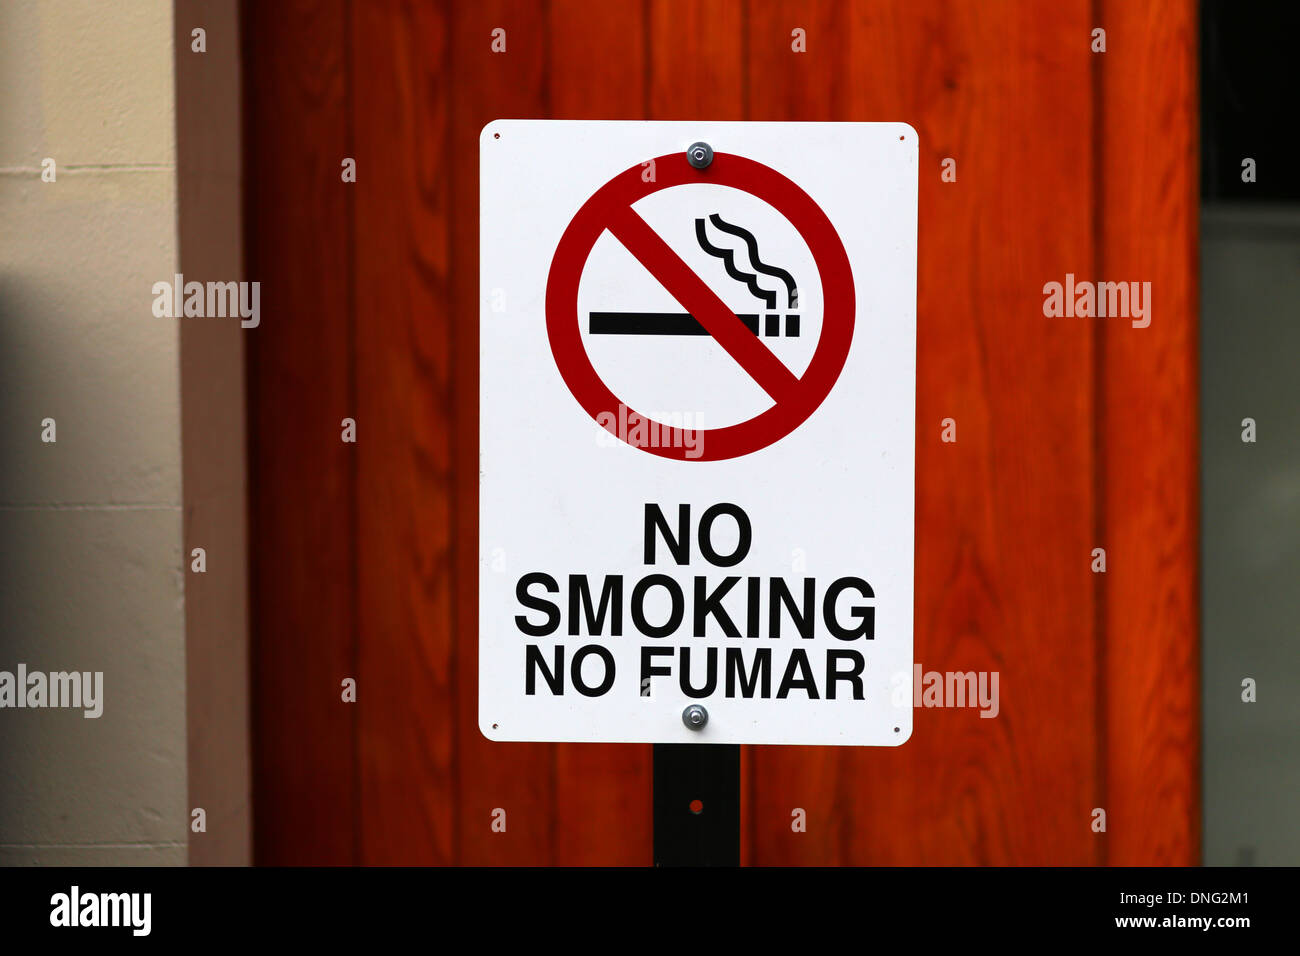 No Smoking, No Fumar Stock Photo